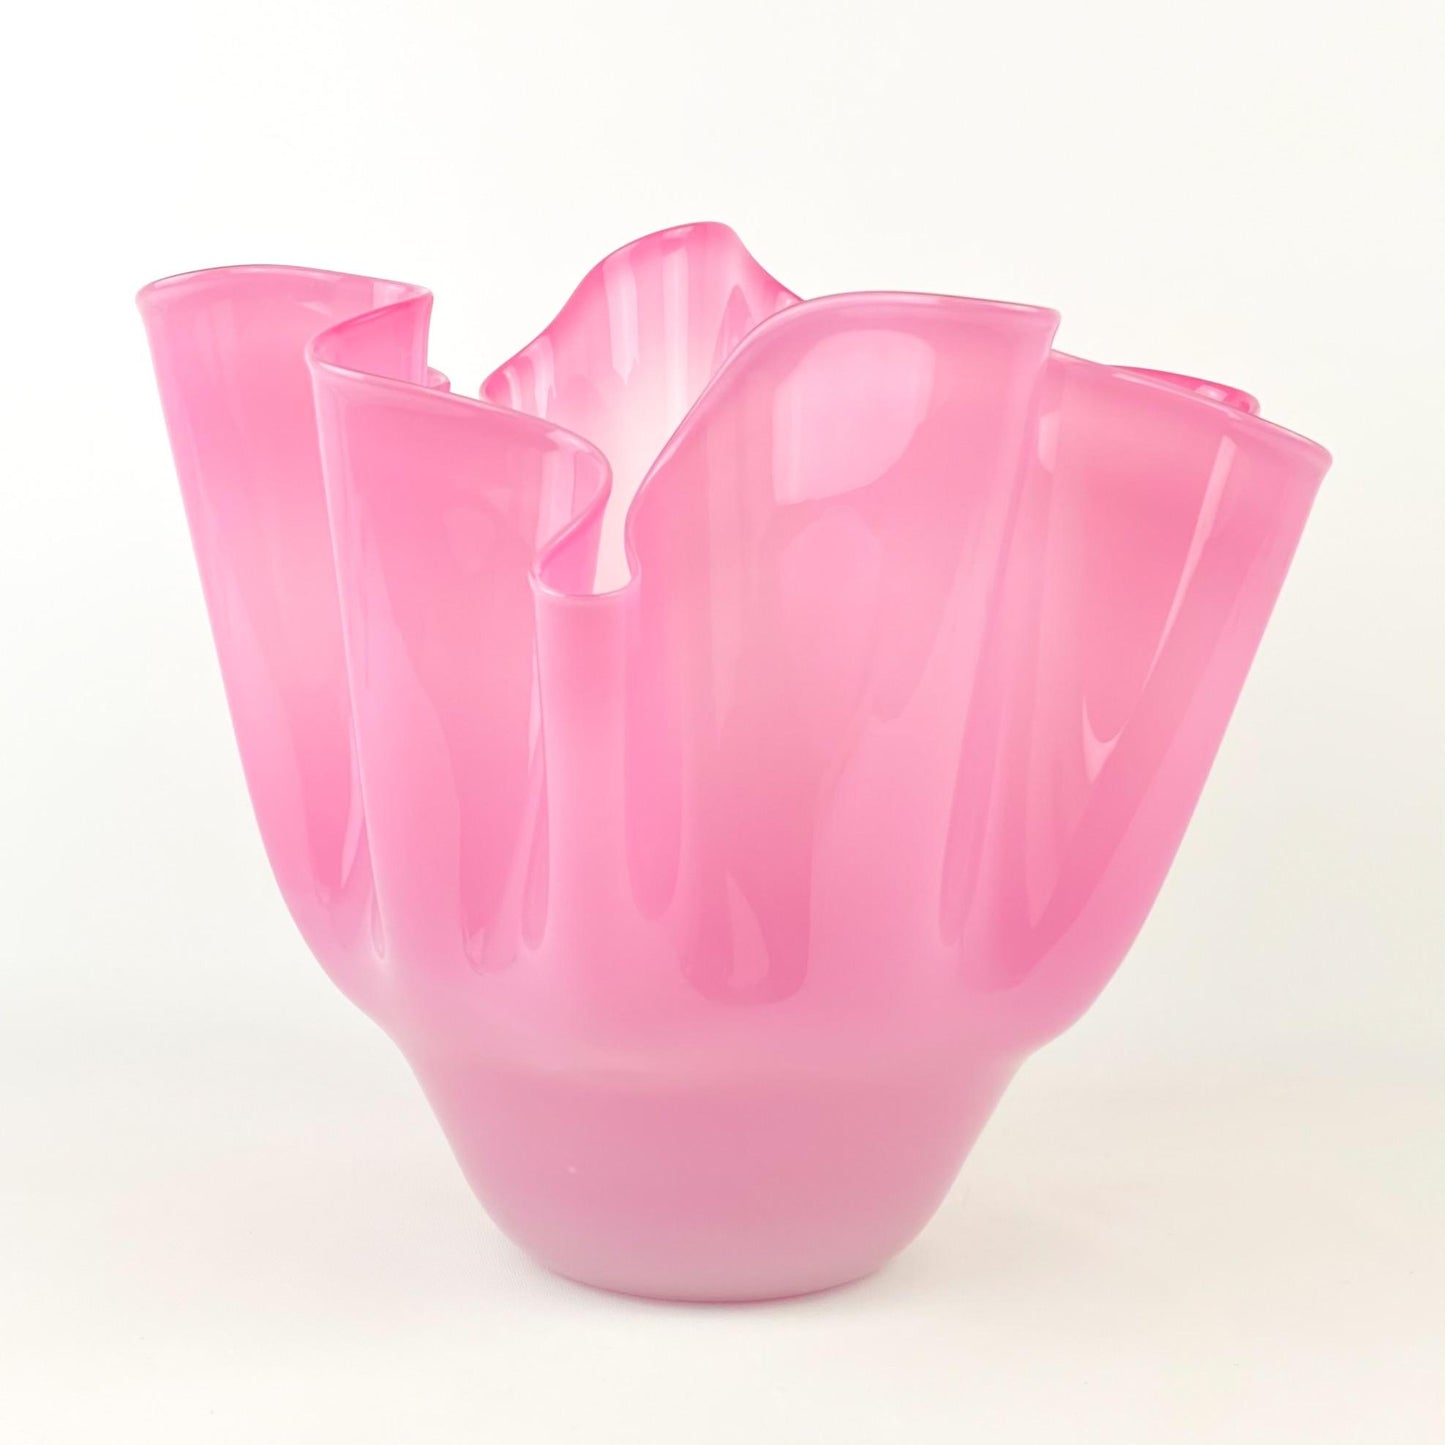 Alessandro Moretti Fazzoletto Pink Murano Glass Vase